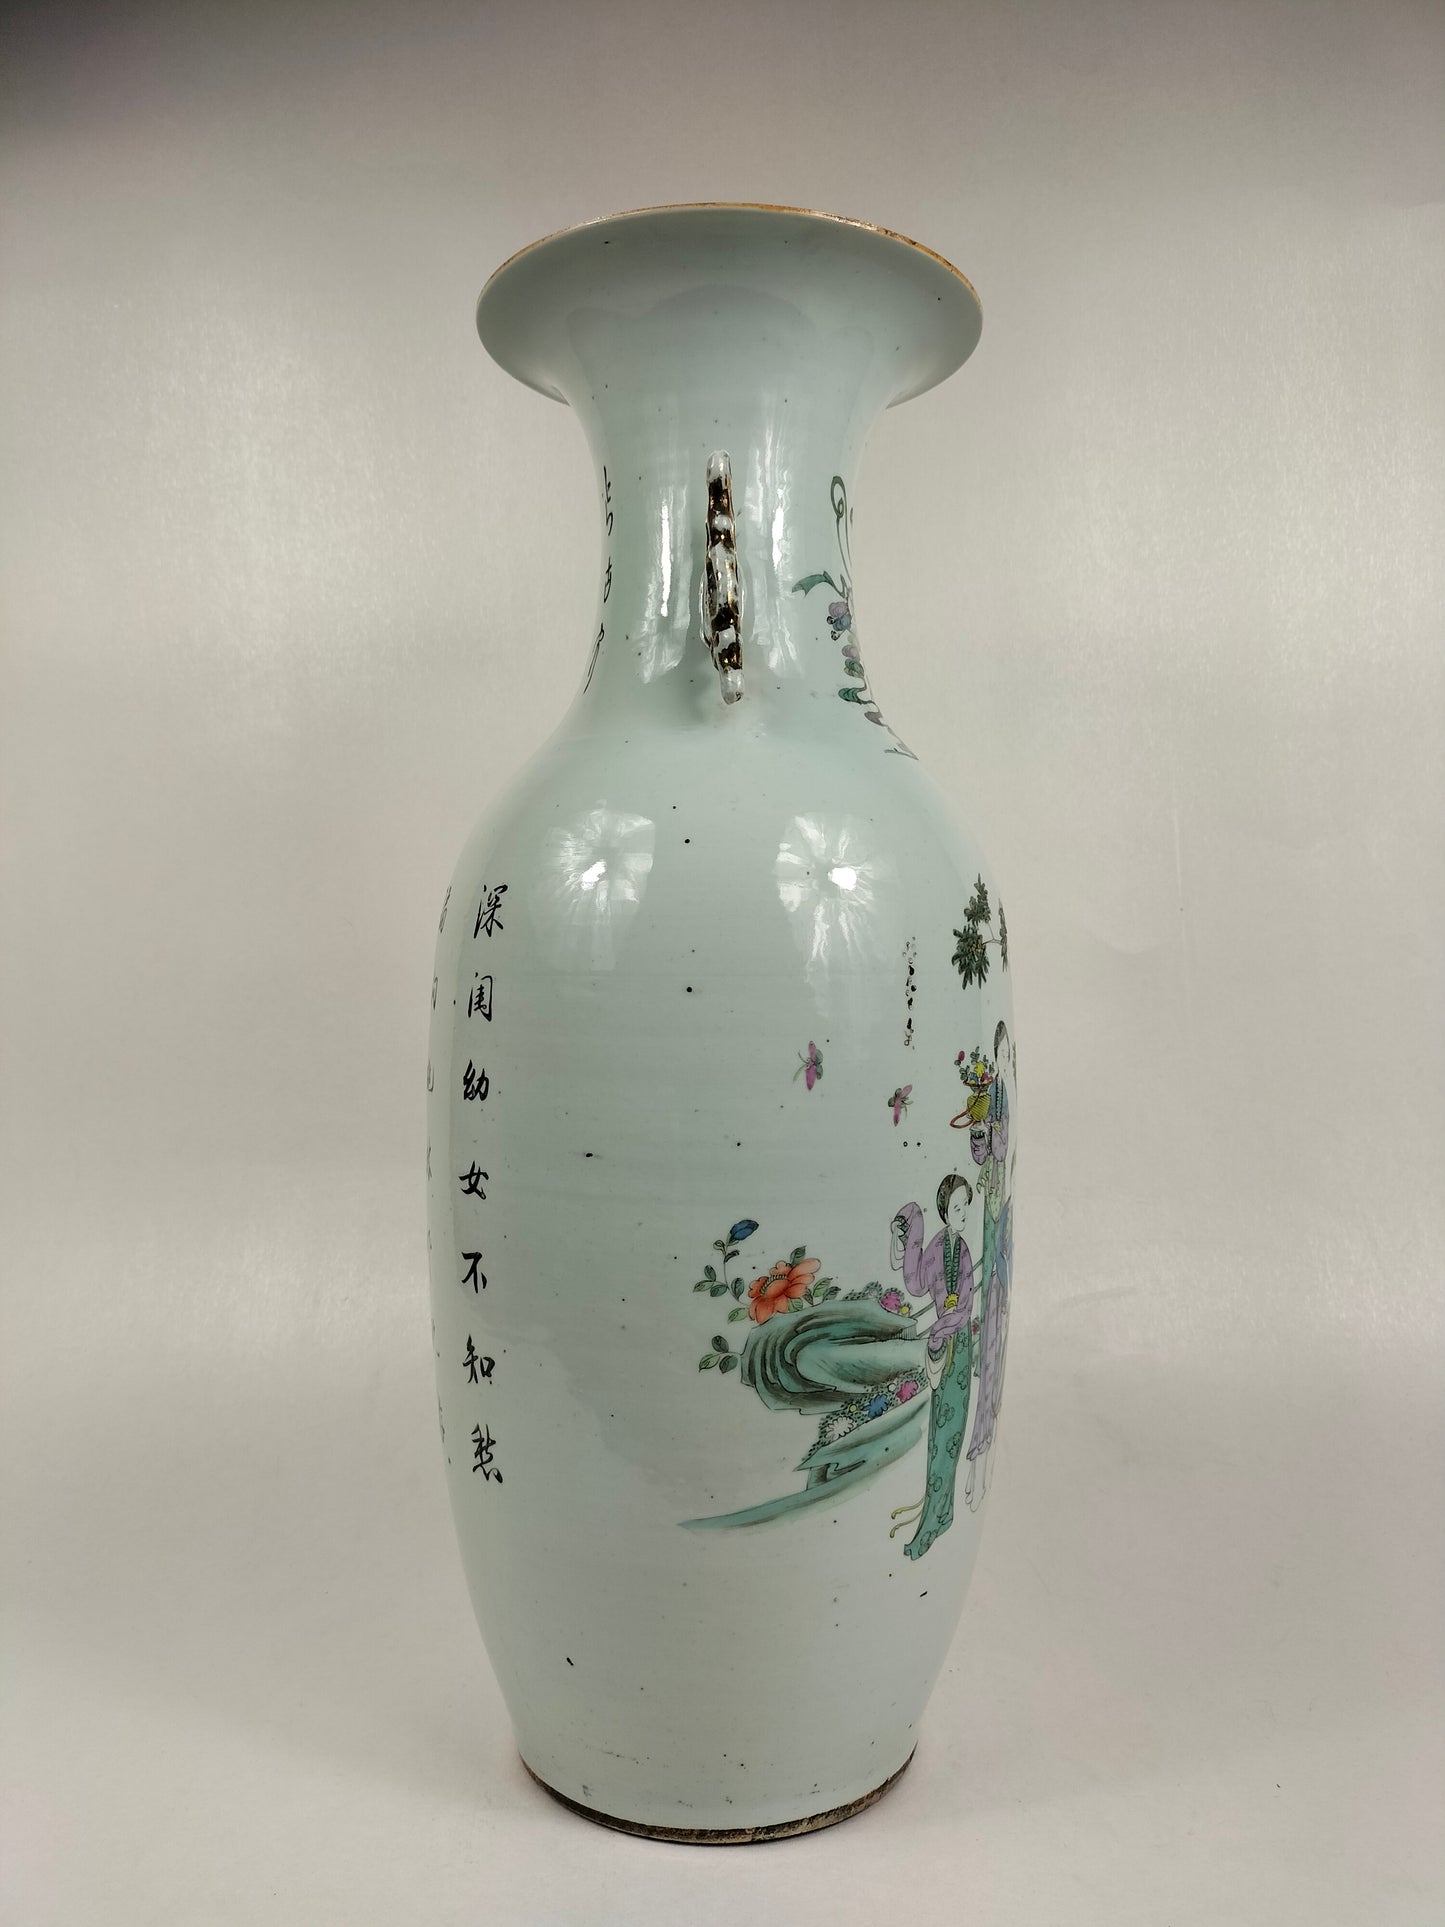 Grand vase chinois ancien à décor de scène de jardin / Période République (1912-1949)